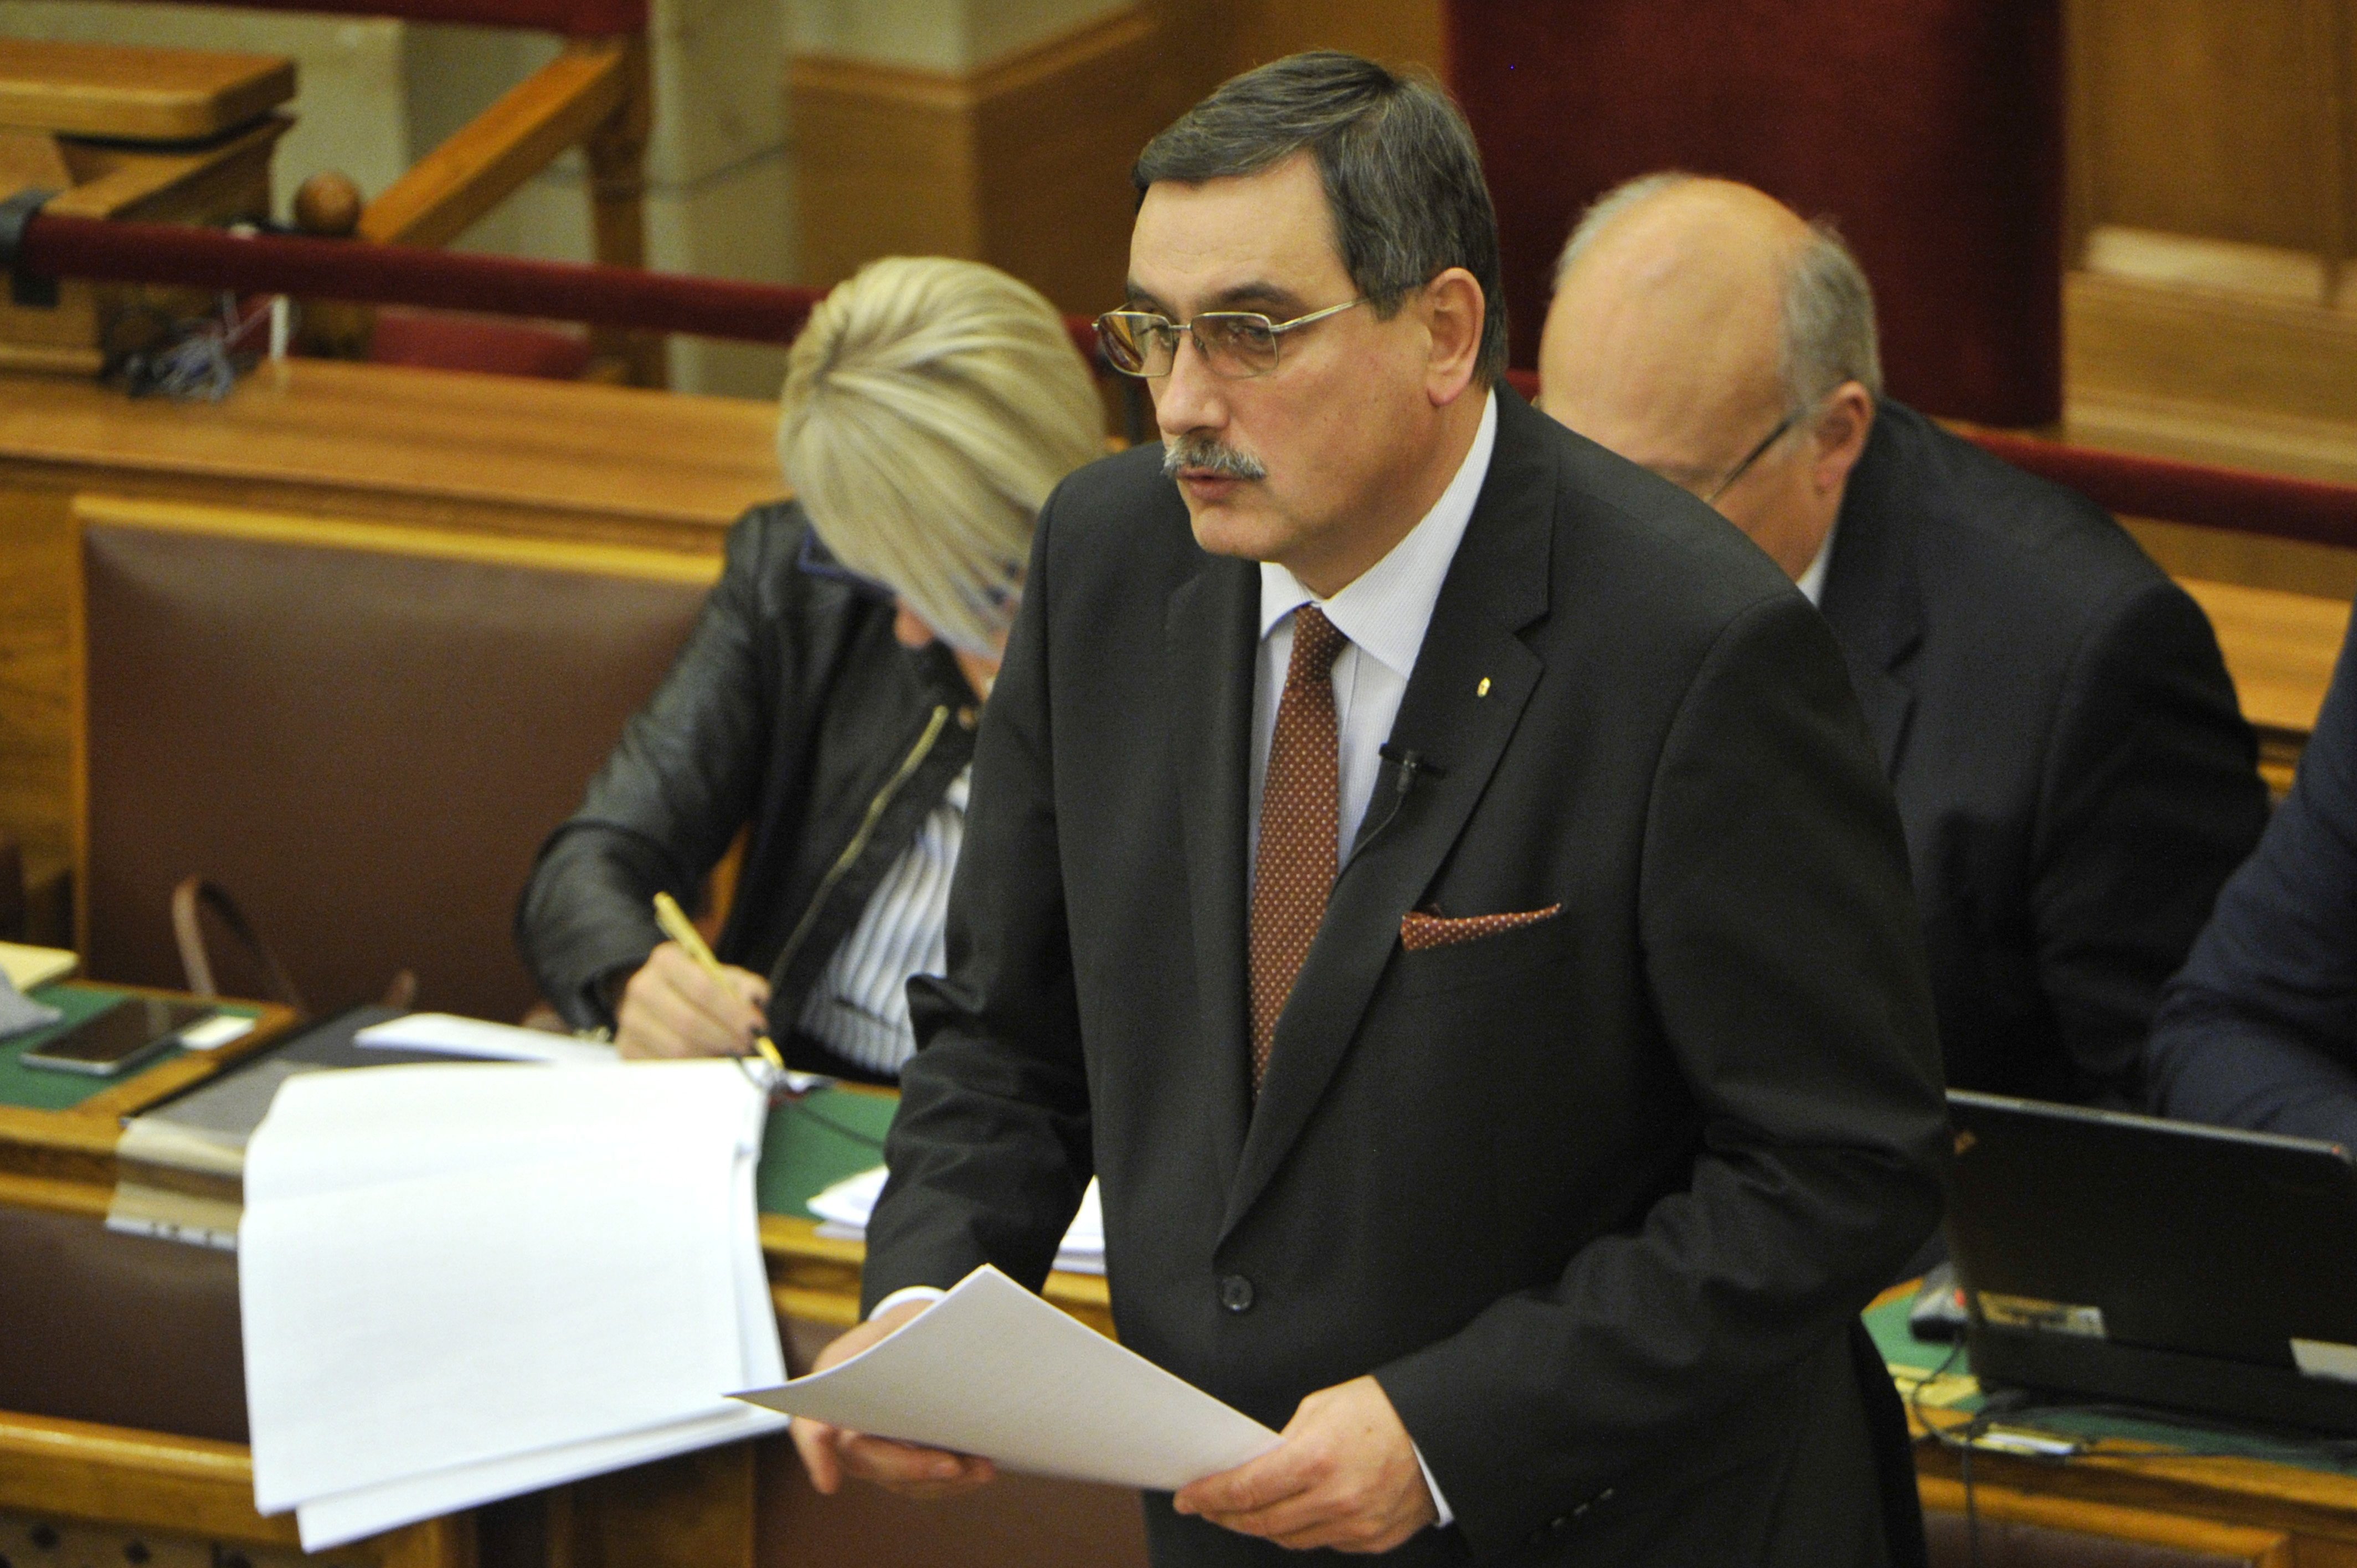 Hörcsik Richárd, a Fidesz vezérszónoka a 2014-2020 közötti időszakban Magyarországnak járó uniós források felhasználásáról szóló politikai vitában, az Országgyűlés plenáris ülésén 2016. november 28-án.